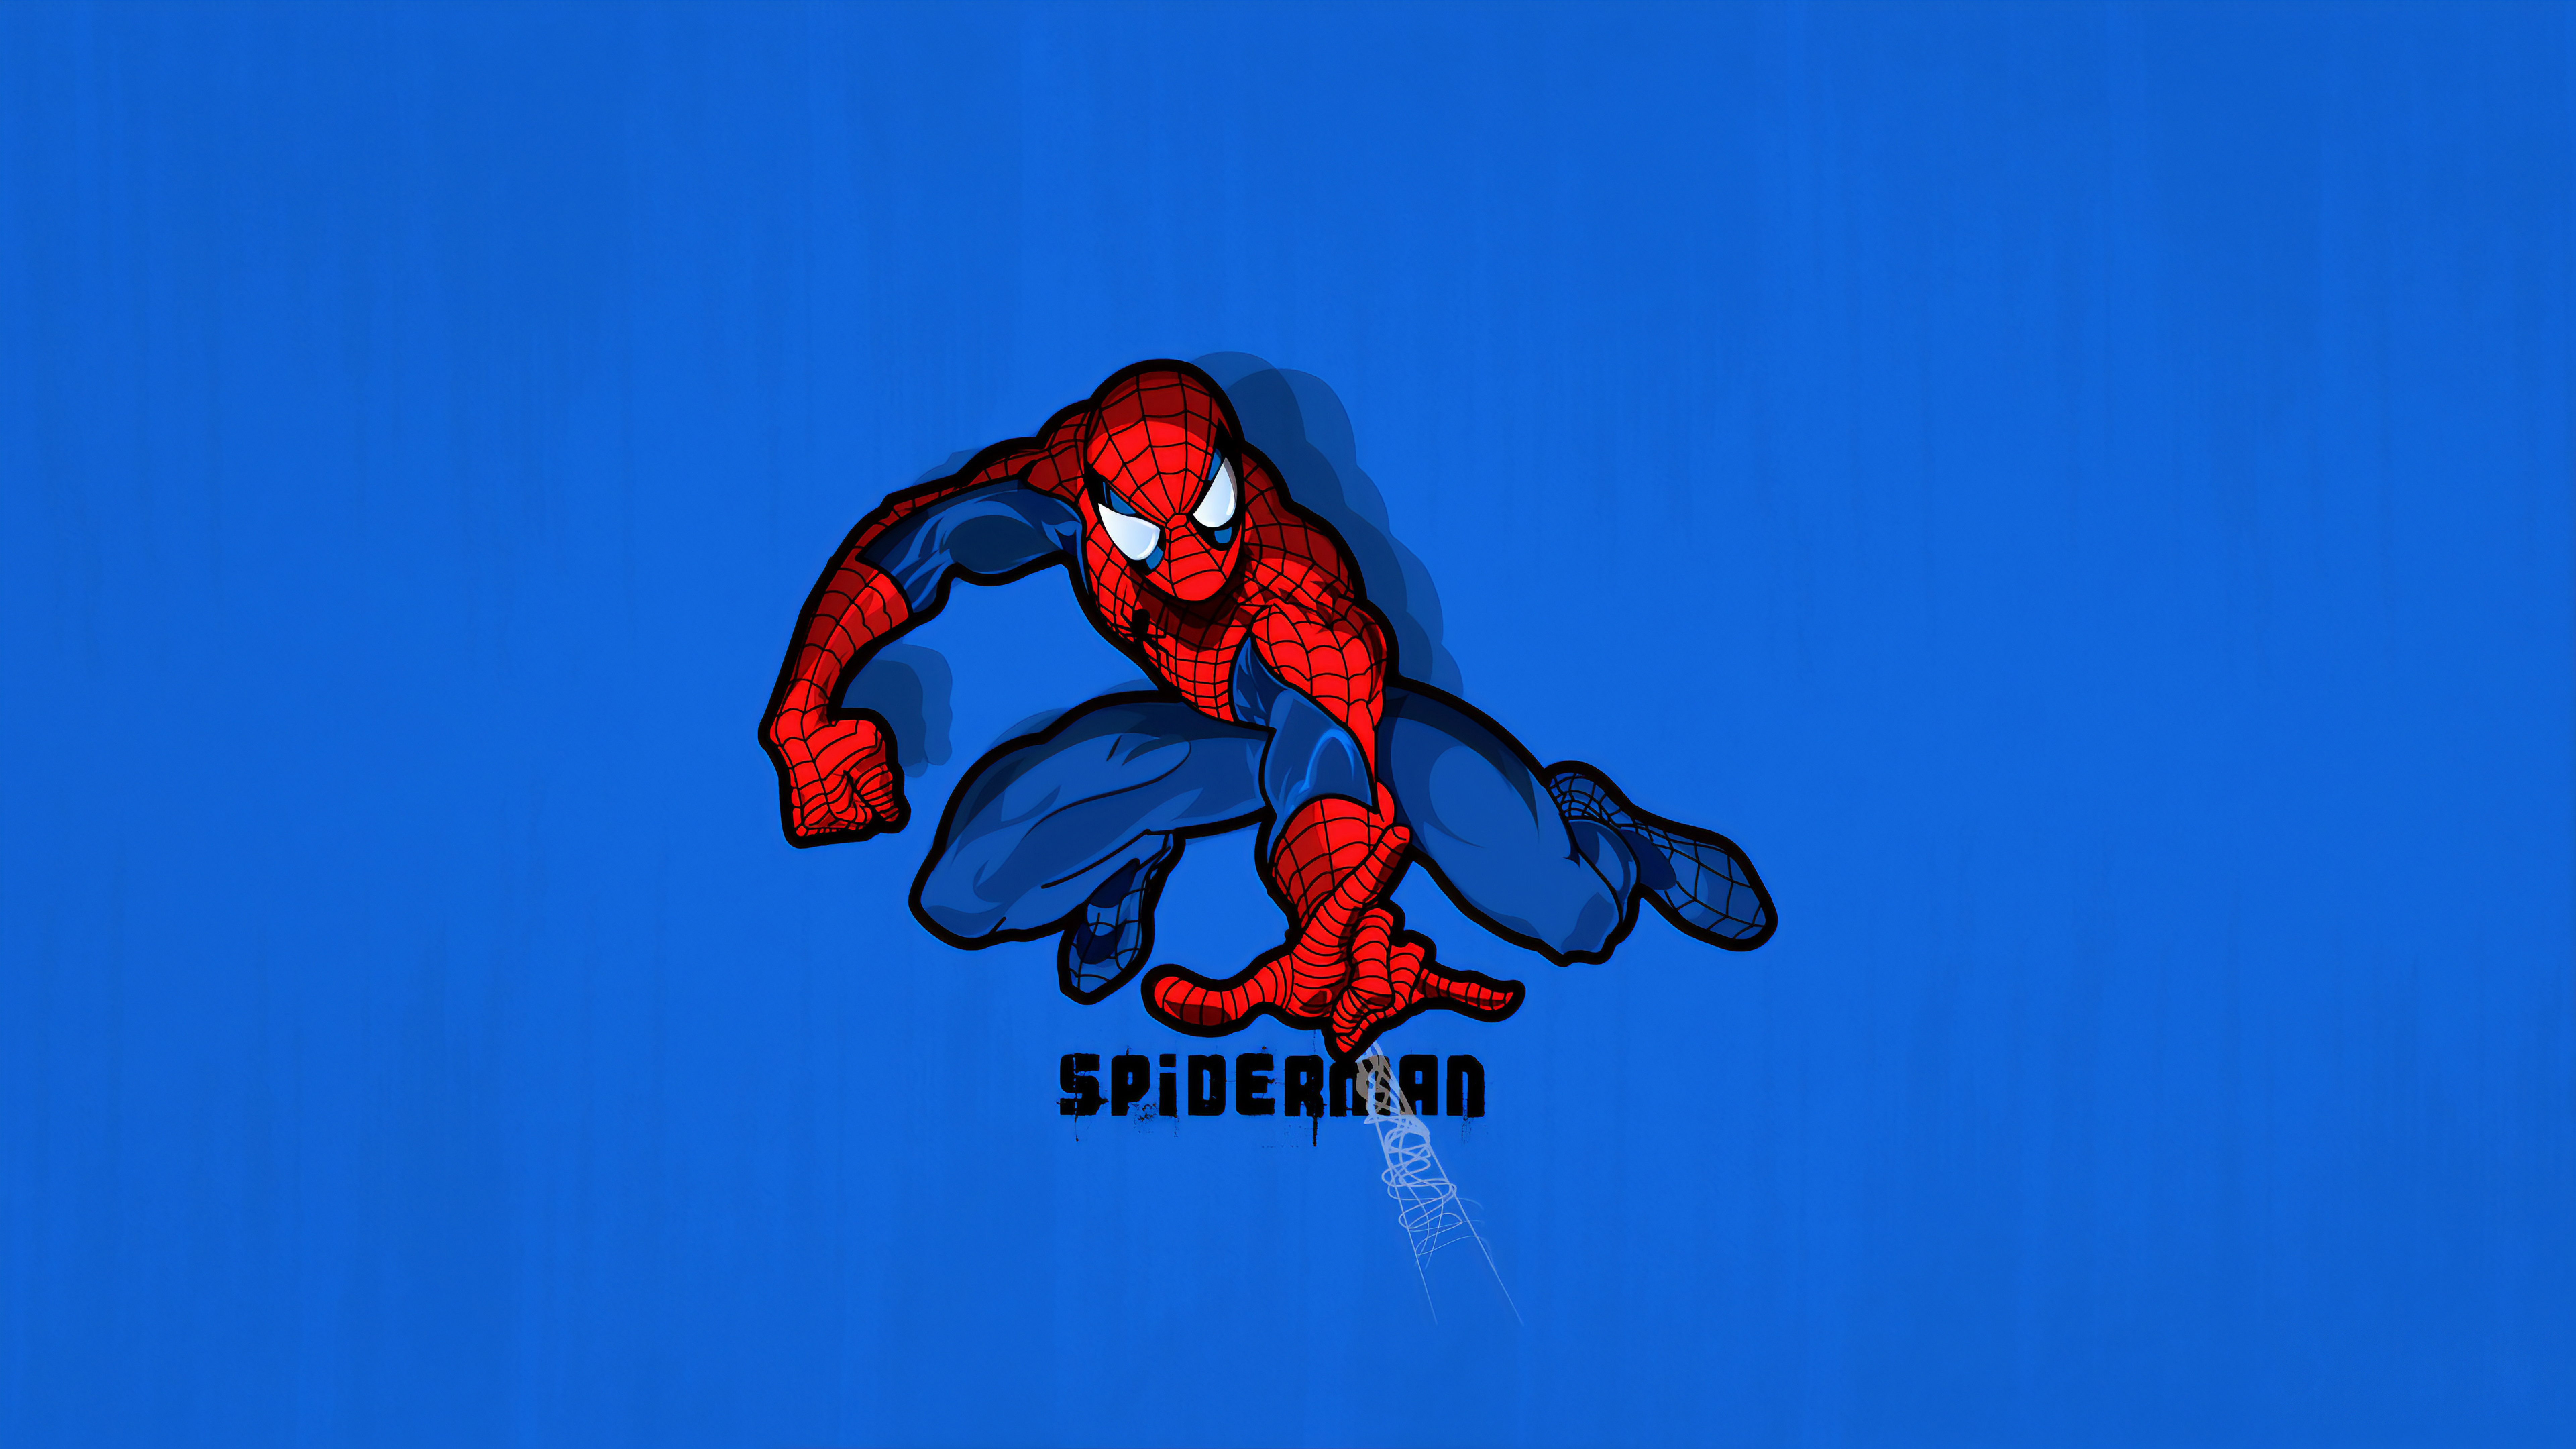 Download wallpaper 7680x4320 spider-man 2099, minimal & dark art 8k  wallpaper, 7680x4320 8k background, 27981